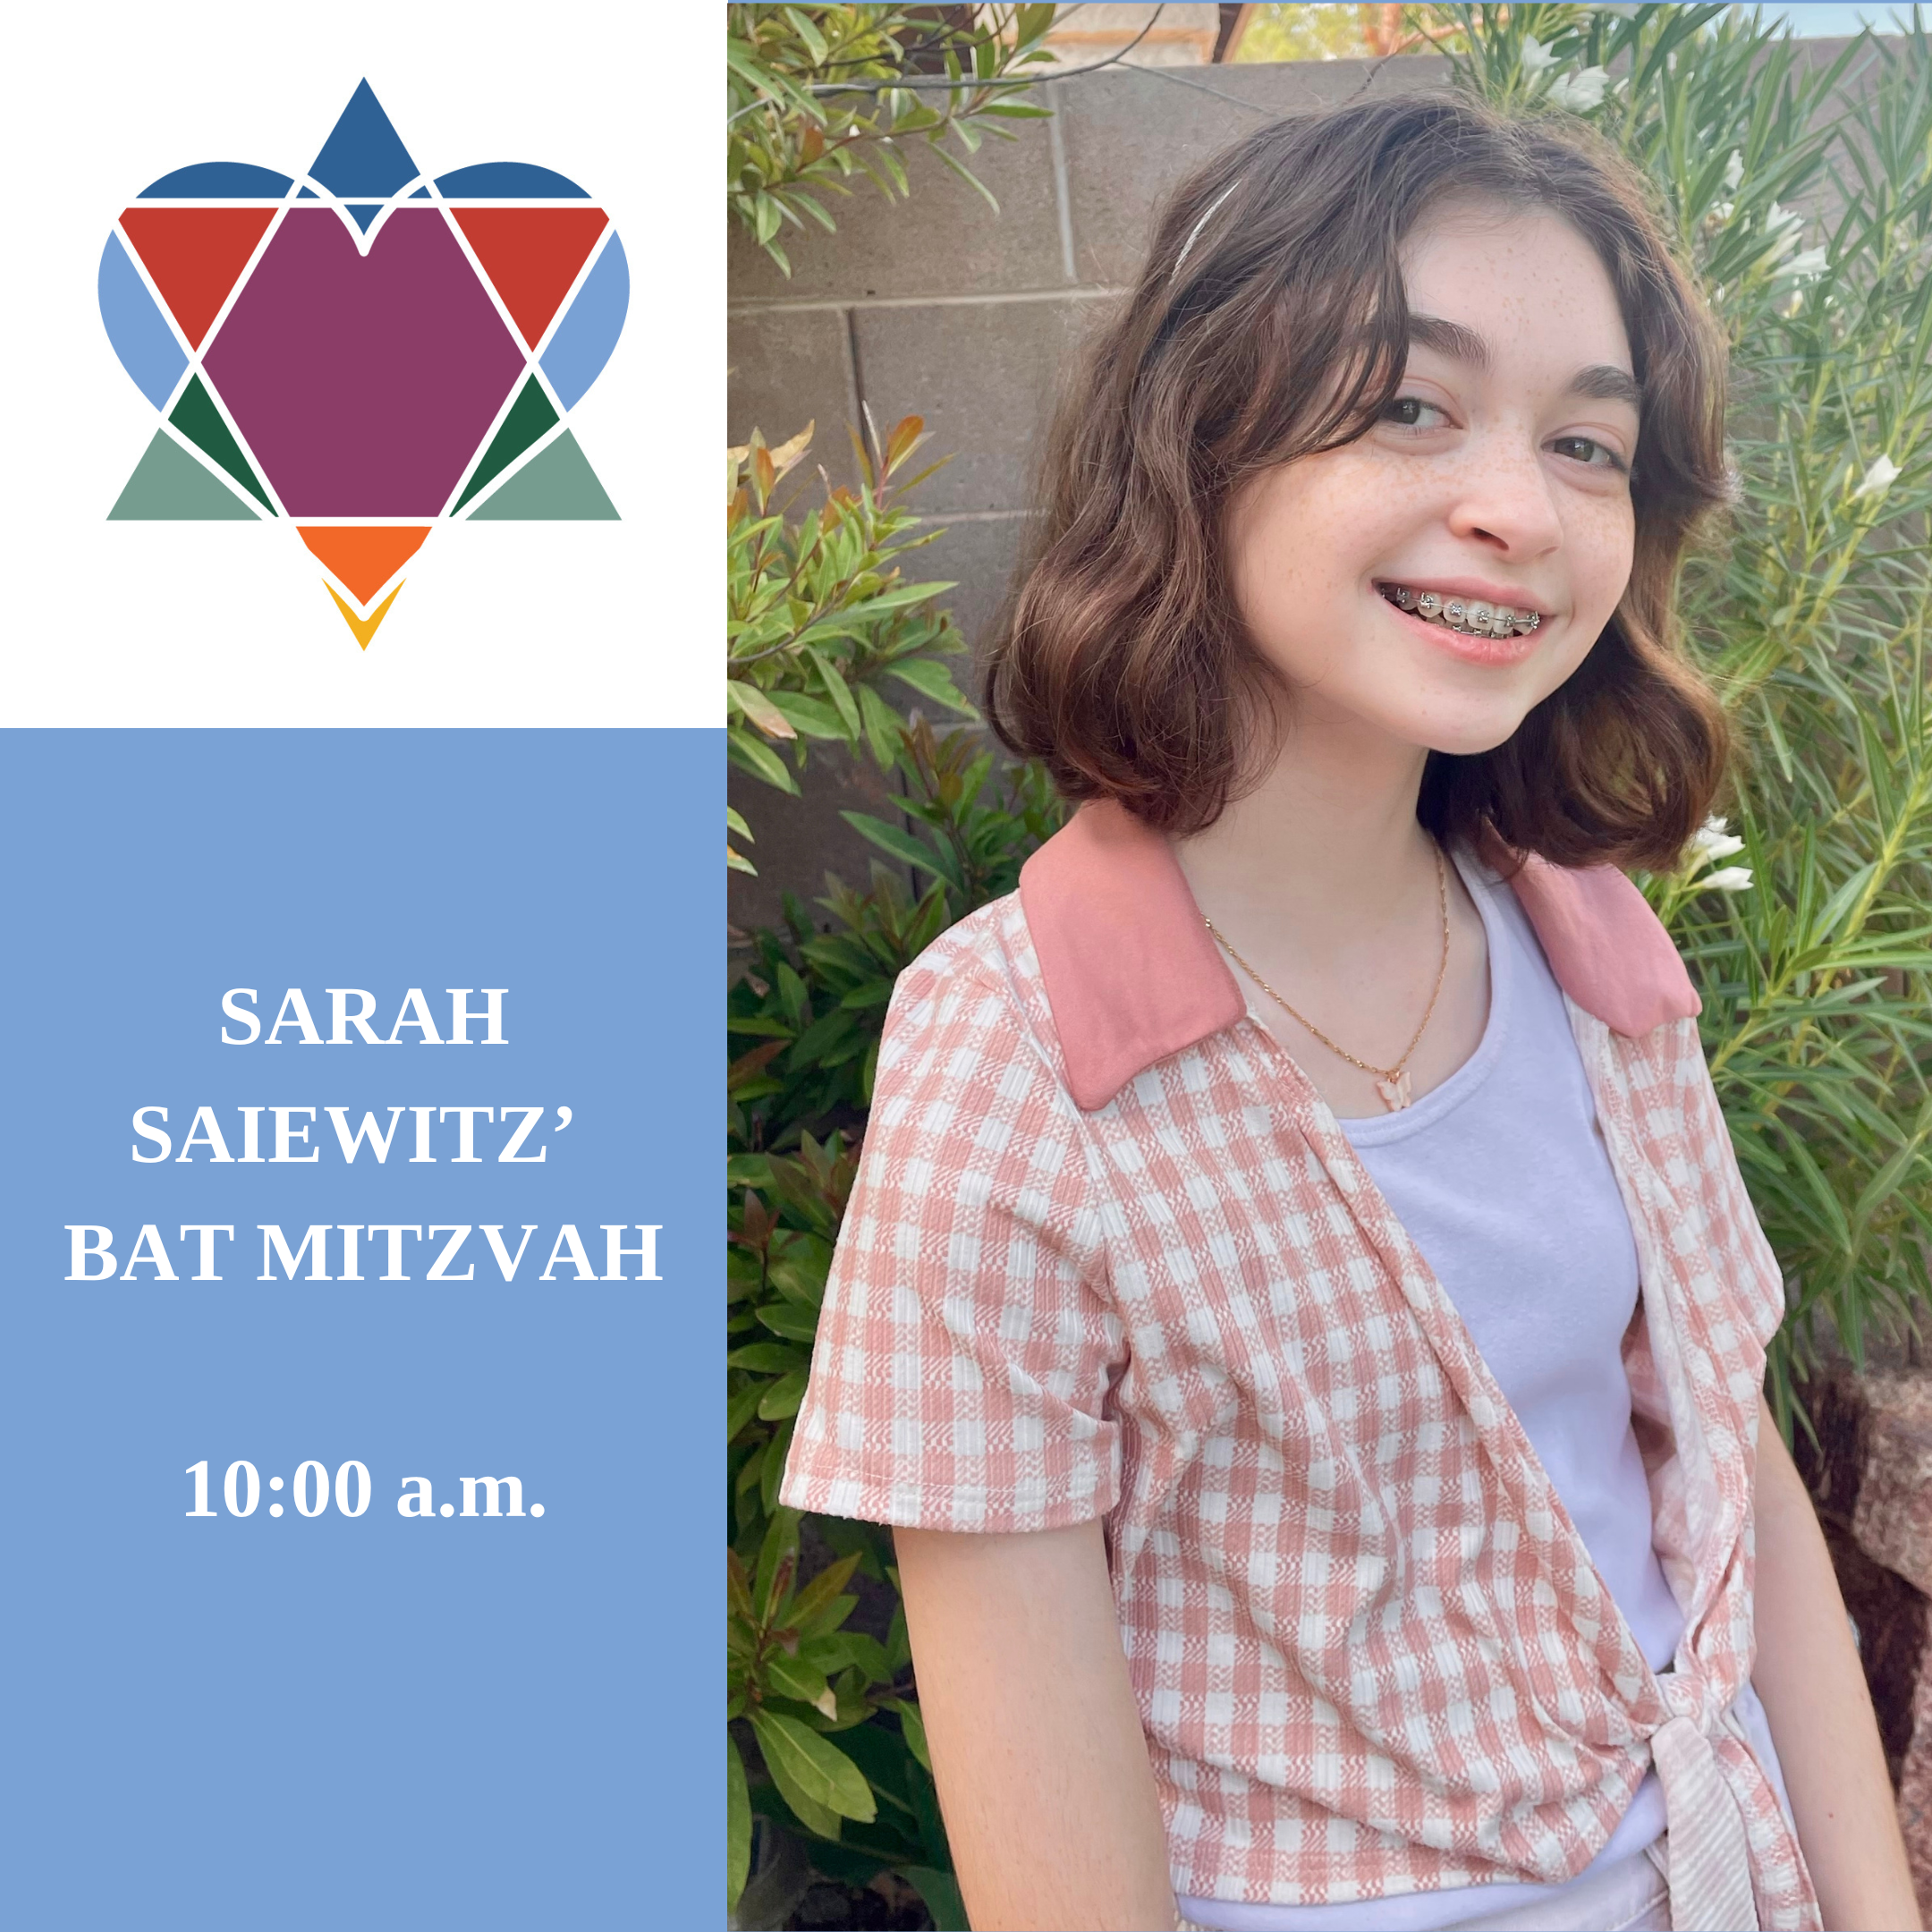 SARAH SAIEWITZ’ BAT MITZVAH